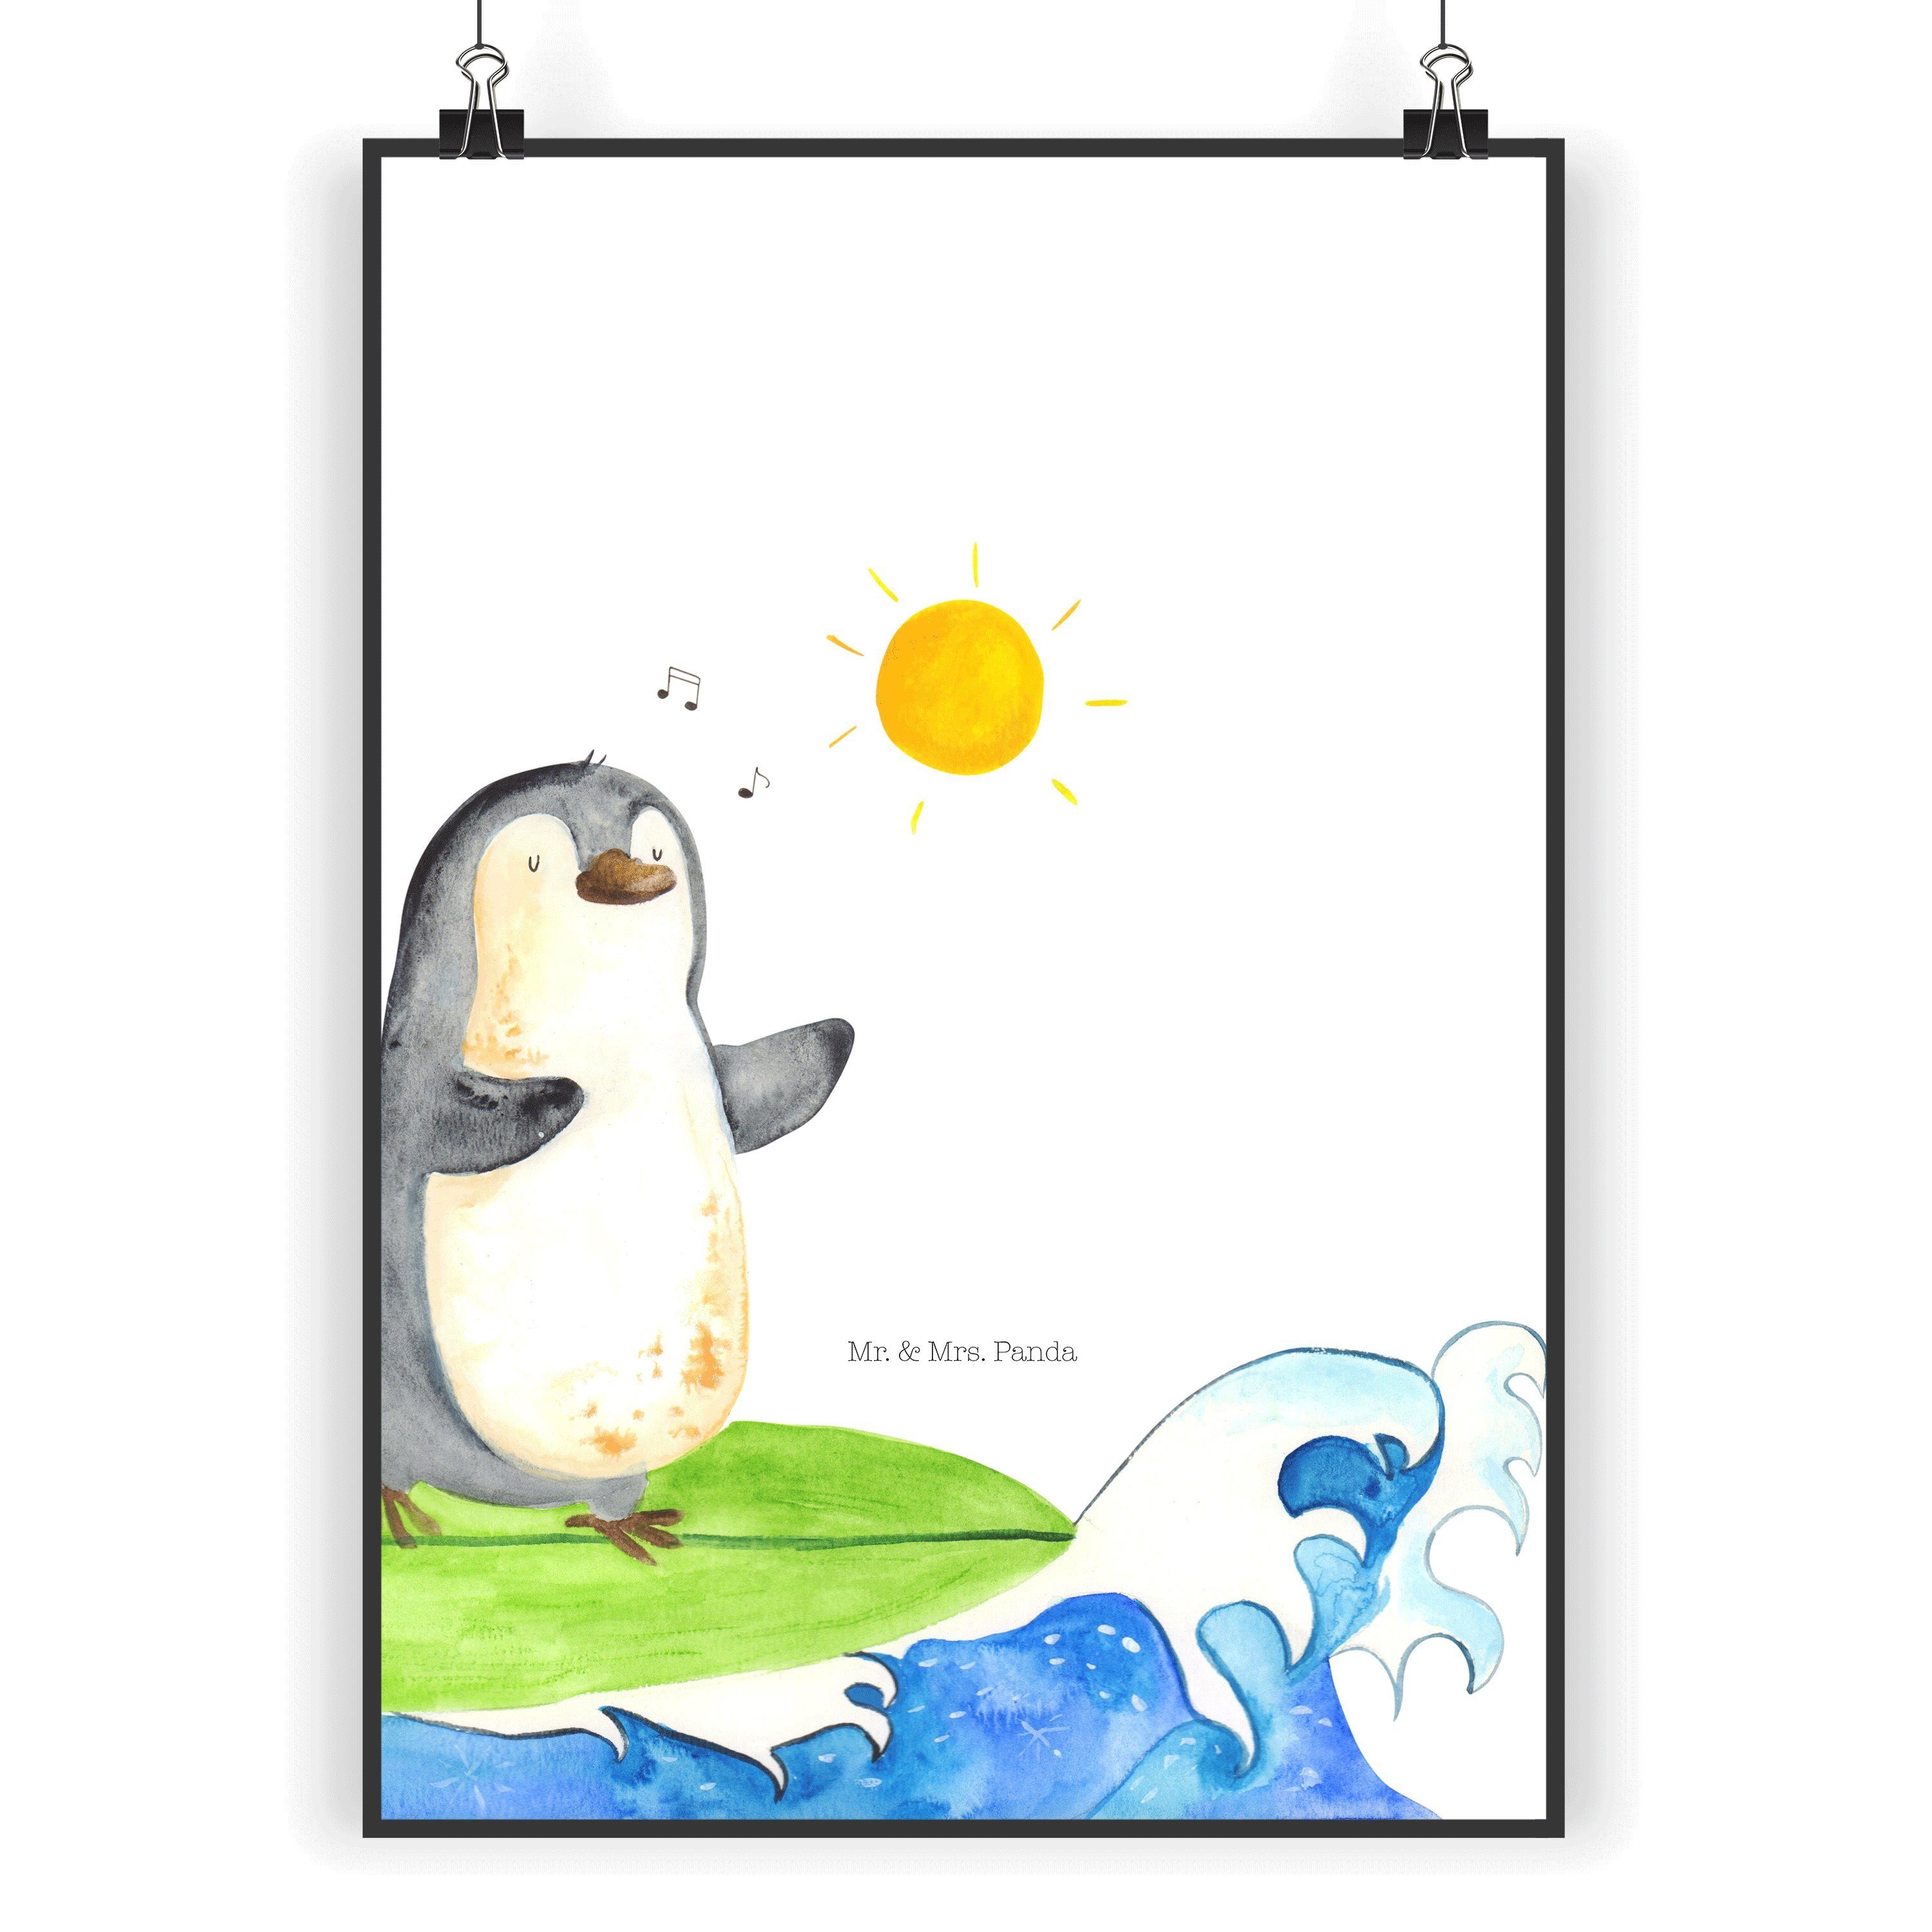 Mr. & Mrs. Panda Poster DIN A5 Pinguin Surfer - Weiß - Geschenk, Designposter, Wanddeko Bild, Pinguin Surfer (1 St), Breites Motivspektrum